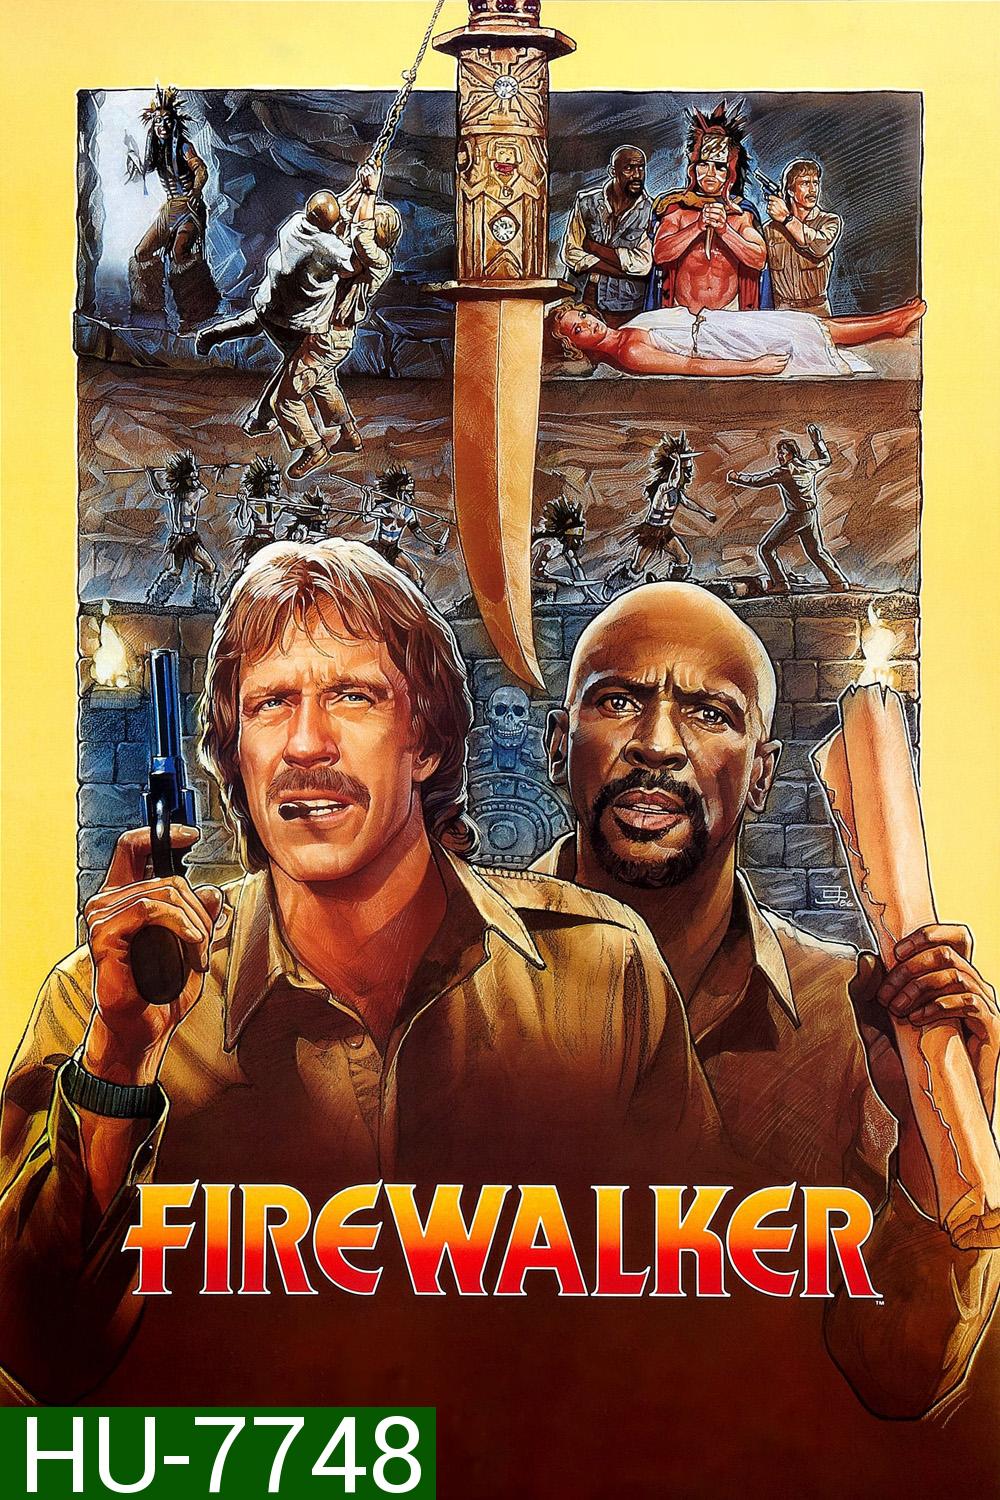 Firewalker (1986) ล่าขุมทรัพย์วิหารทองคำ